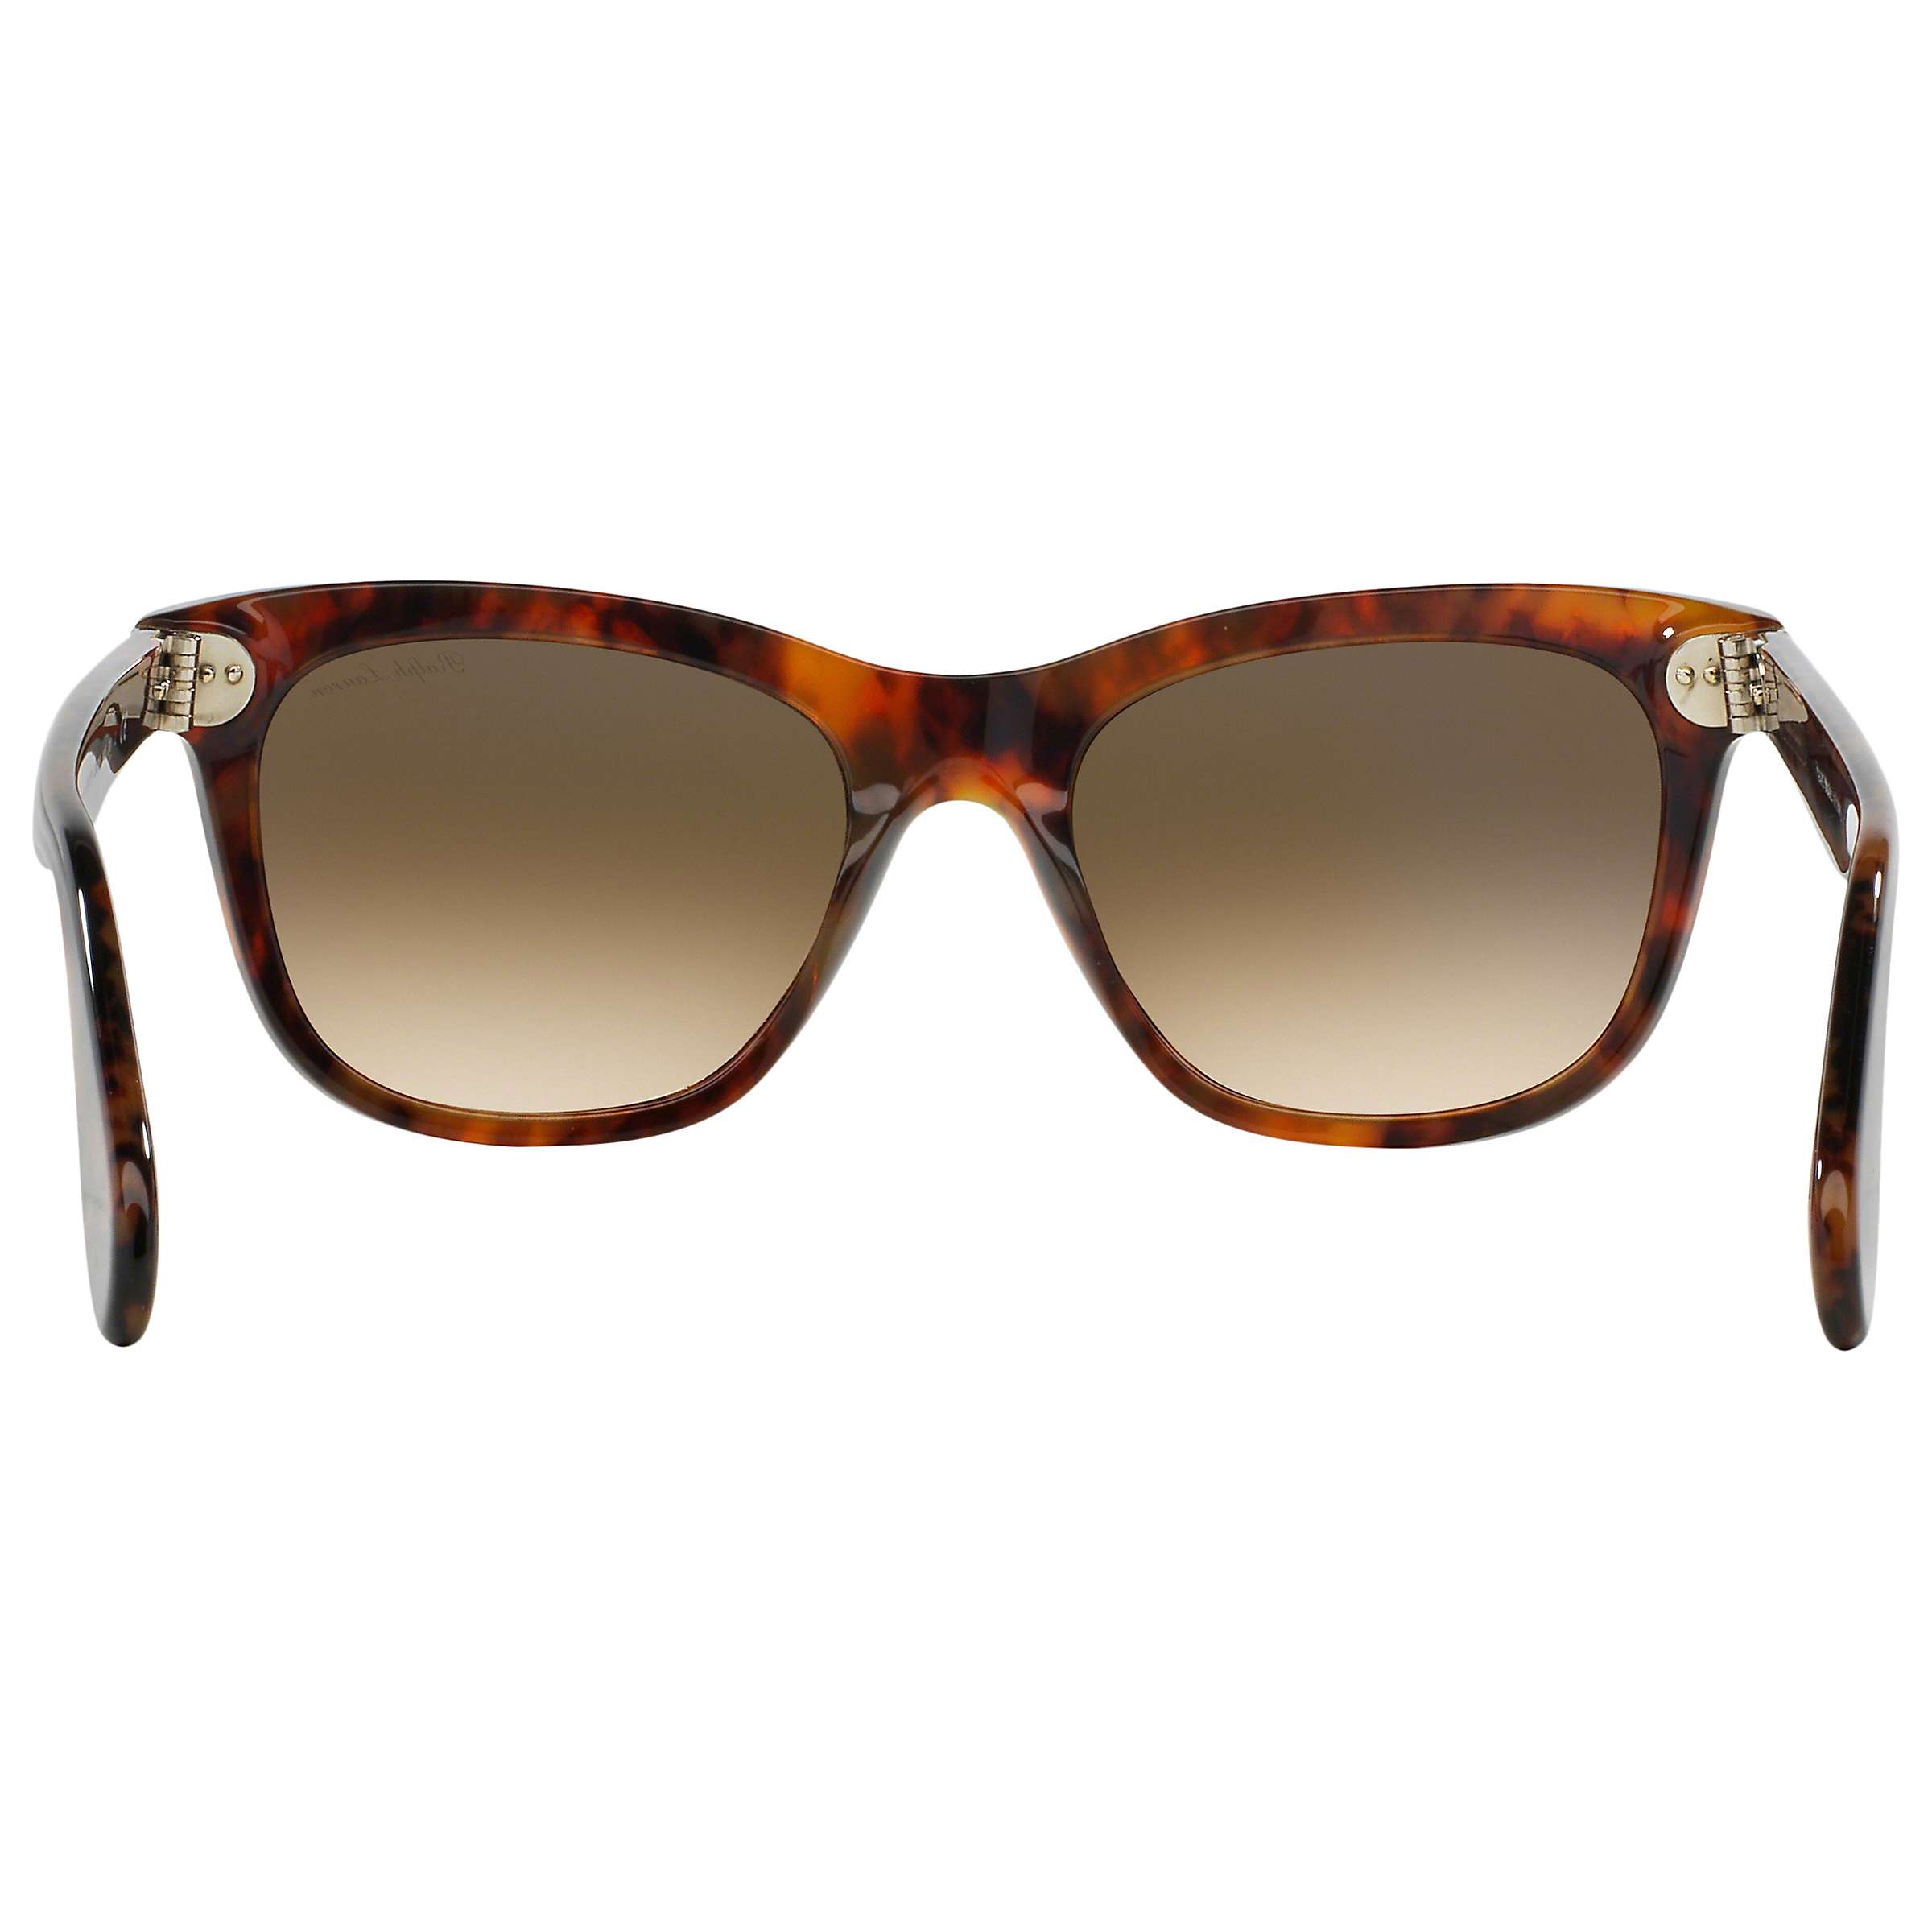 Buy Ralph Lauren RL8119W Sunglasses, Tortoiseshell Online at johnlewis.com